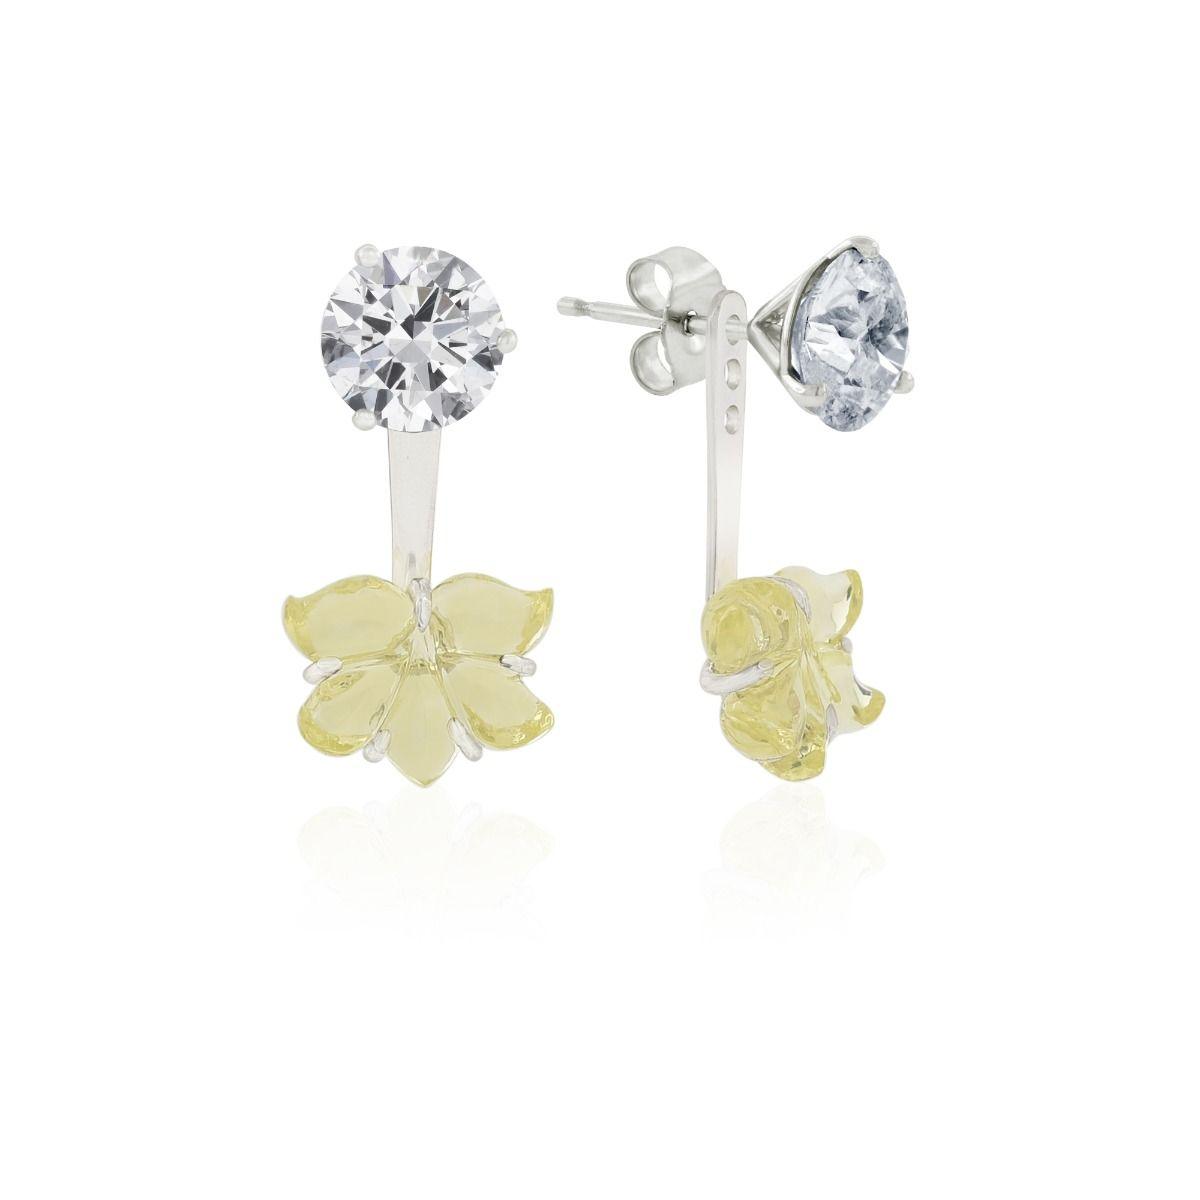 Handmade Gift Black Pearl Stud Earrings Rose Gold Earring Studs Ear Jacket  Earrings Double Sided Earring Jackets Statement Trendy - Etsy | Rose gold  earrings studs, Bridal earrings, Silver earrings